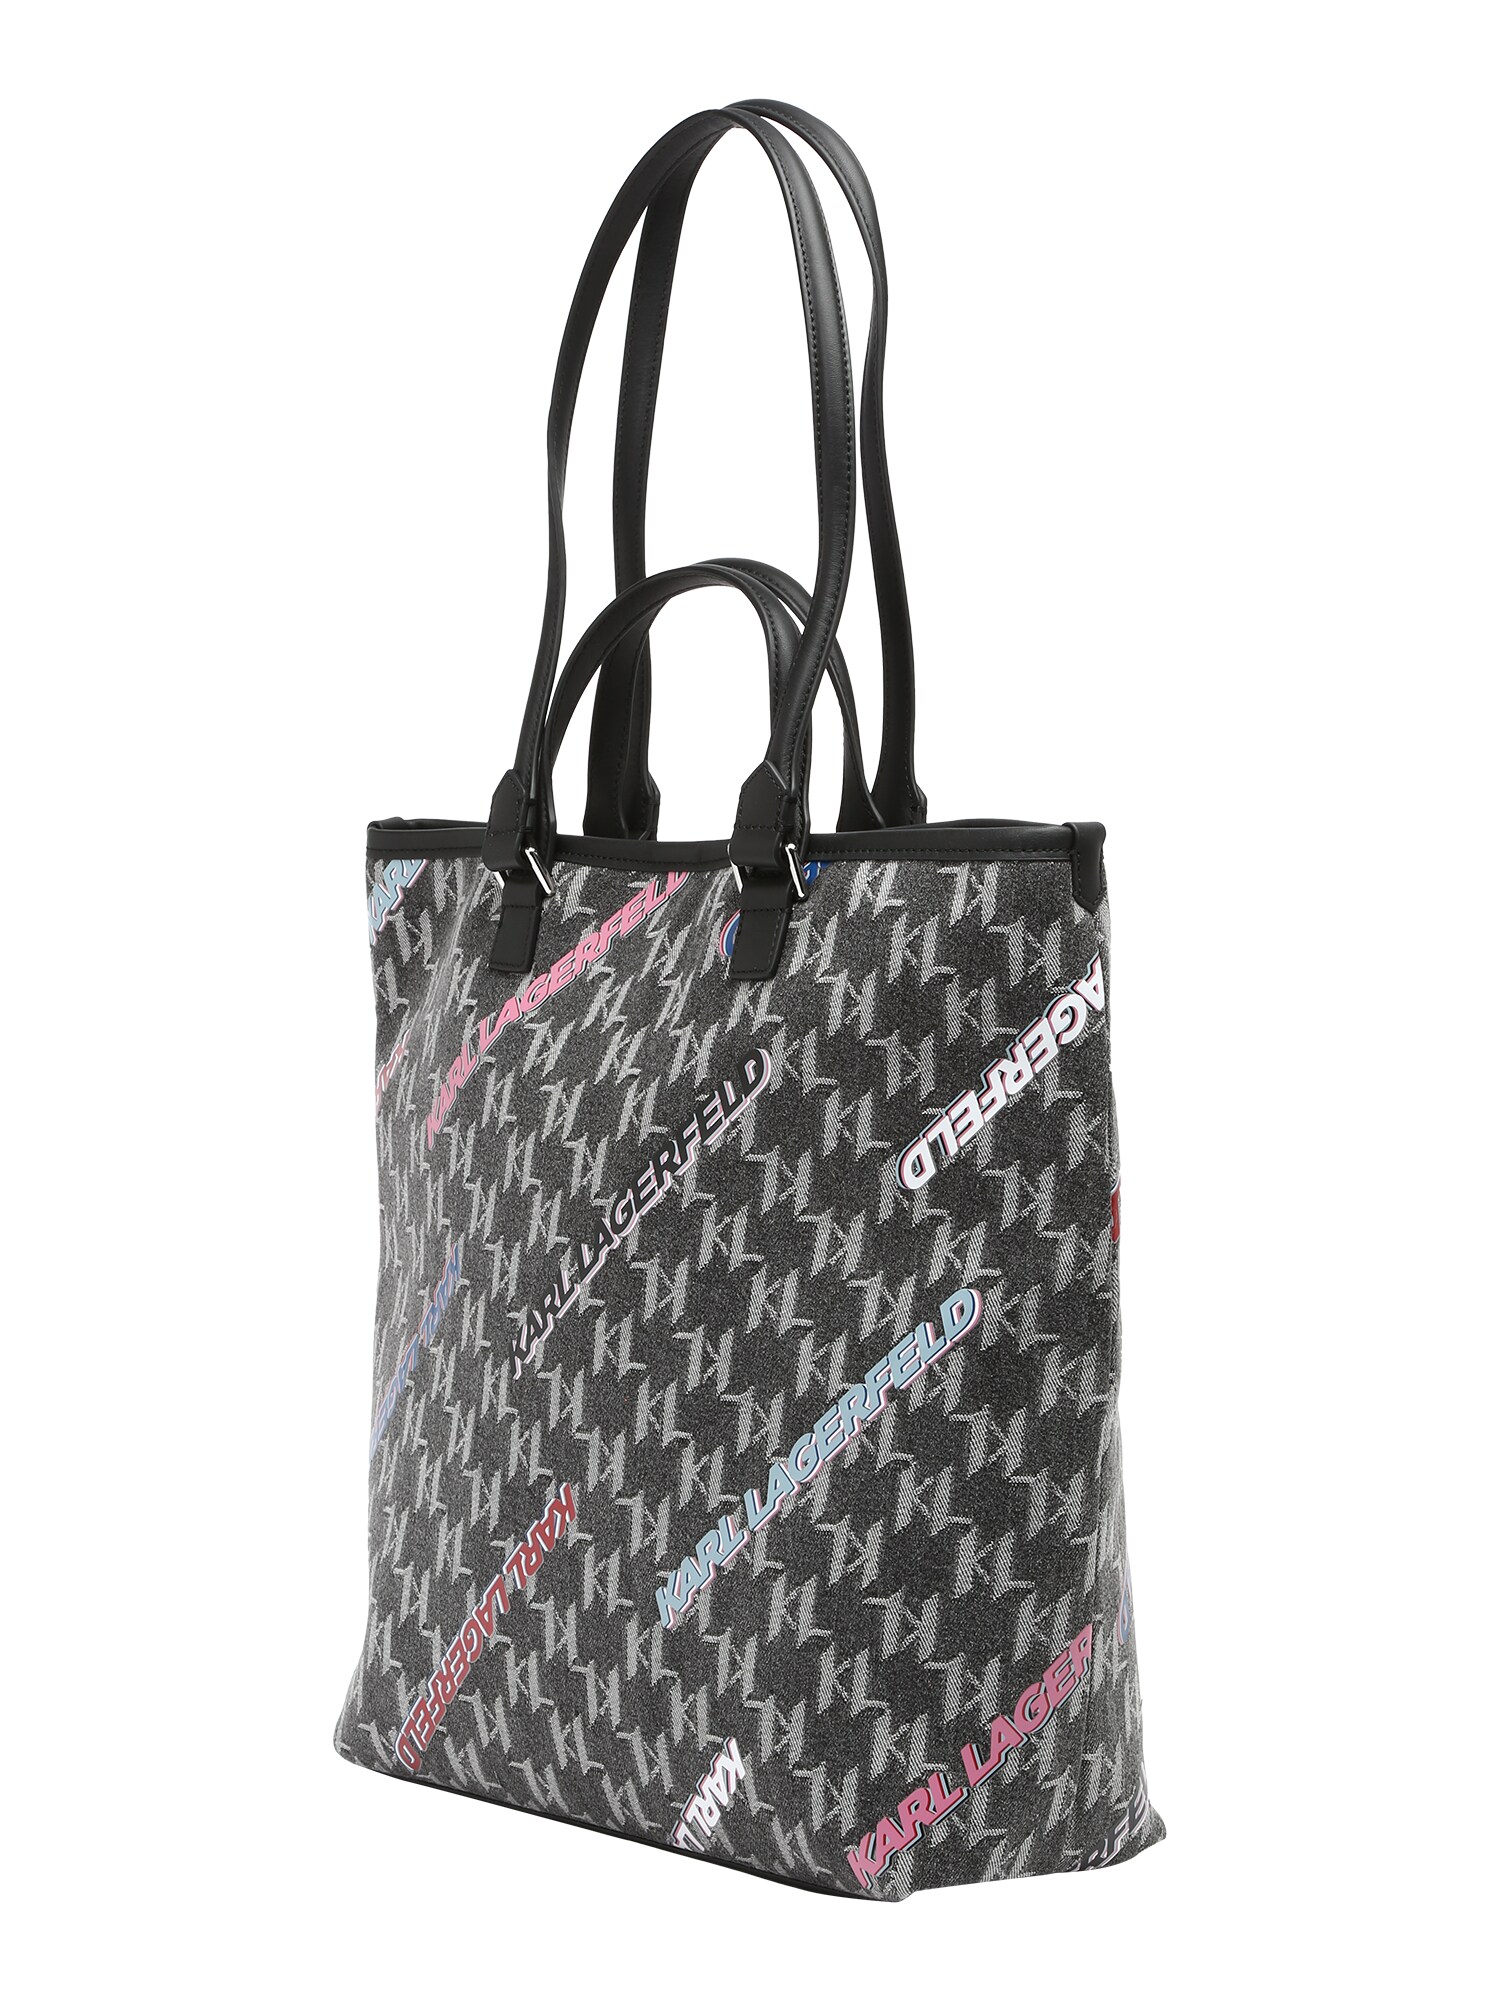 Karl Lagerfeld Shopper táska  sötétszürke / fehér / fekete / világos-rózsaszín